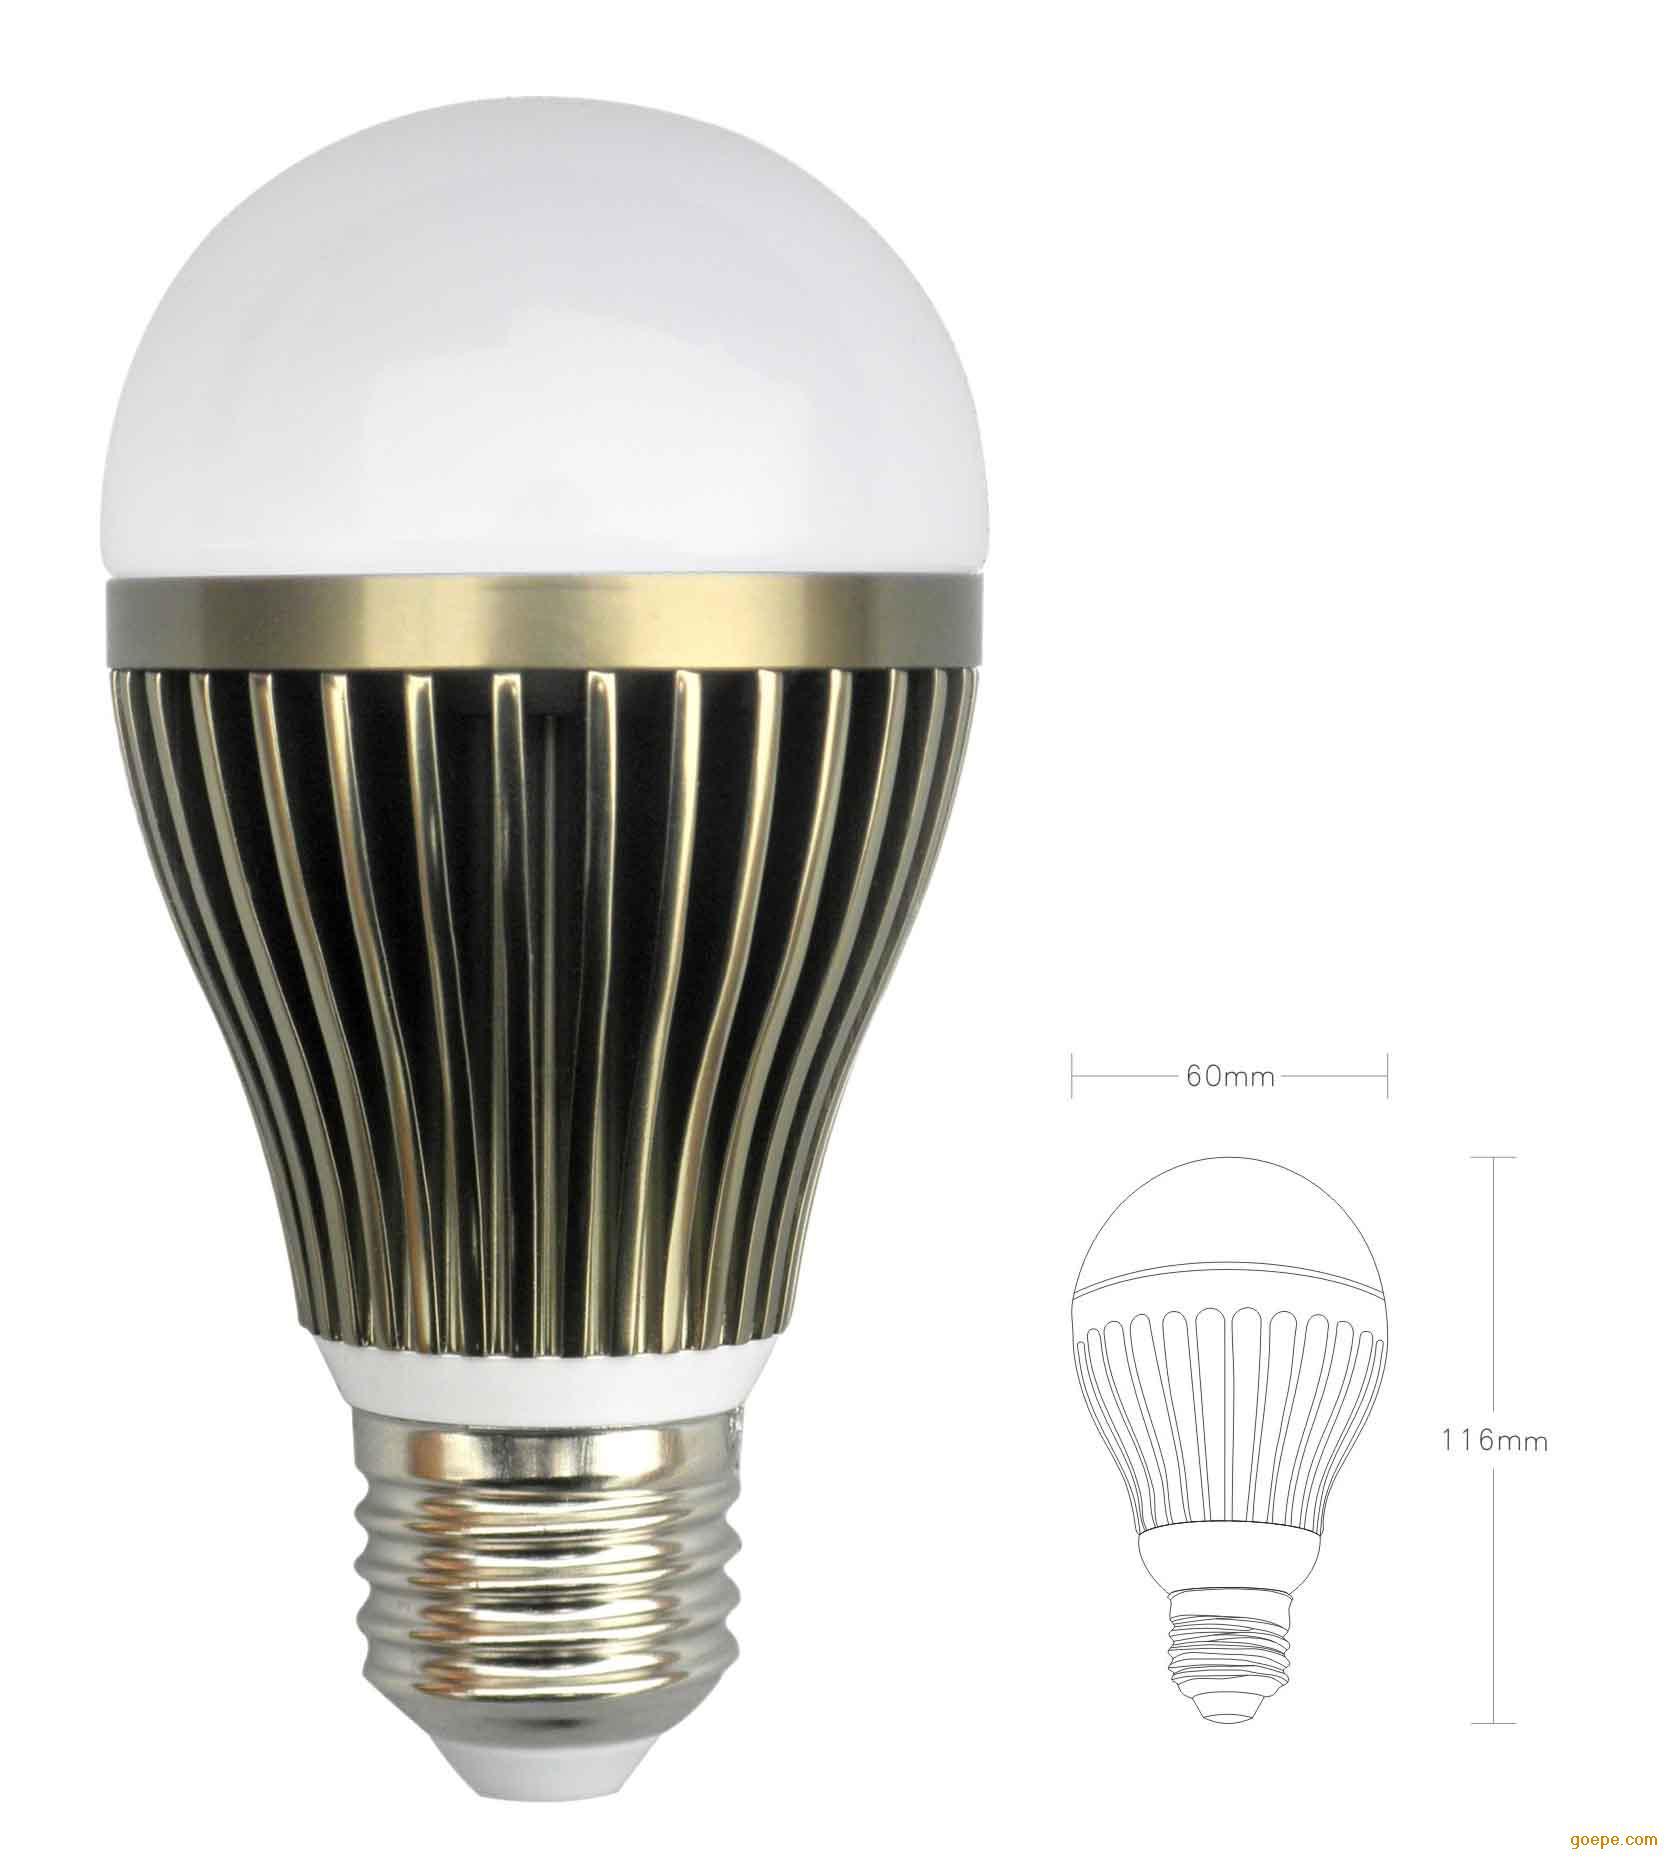 【厂家直销 3W 5W 7W 9W LED球泡灯】价格,厂家,图片,LED球泡灯,中山市乾康照明科技有限公司